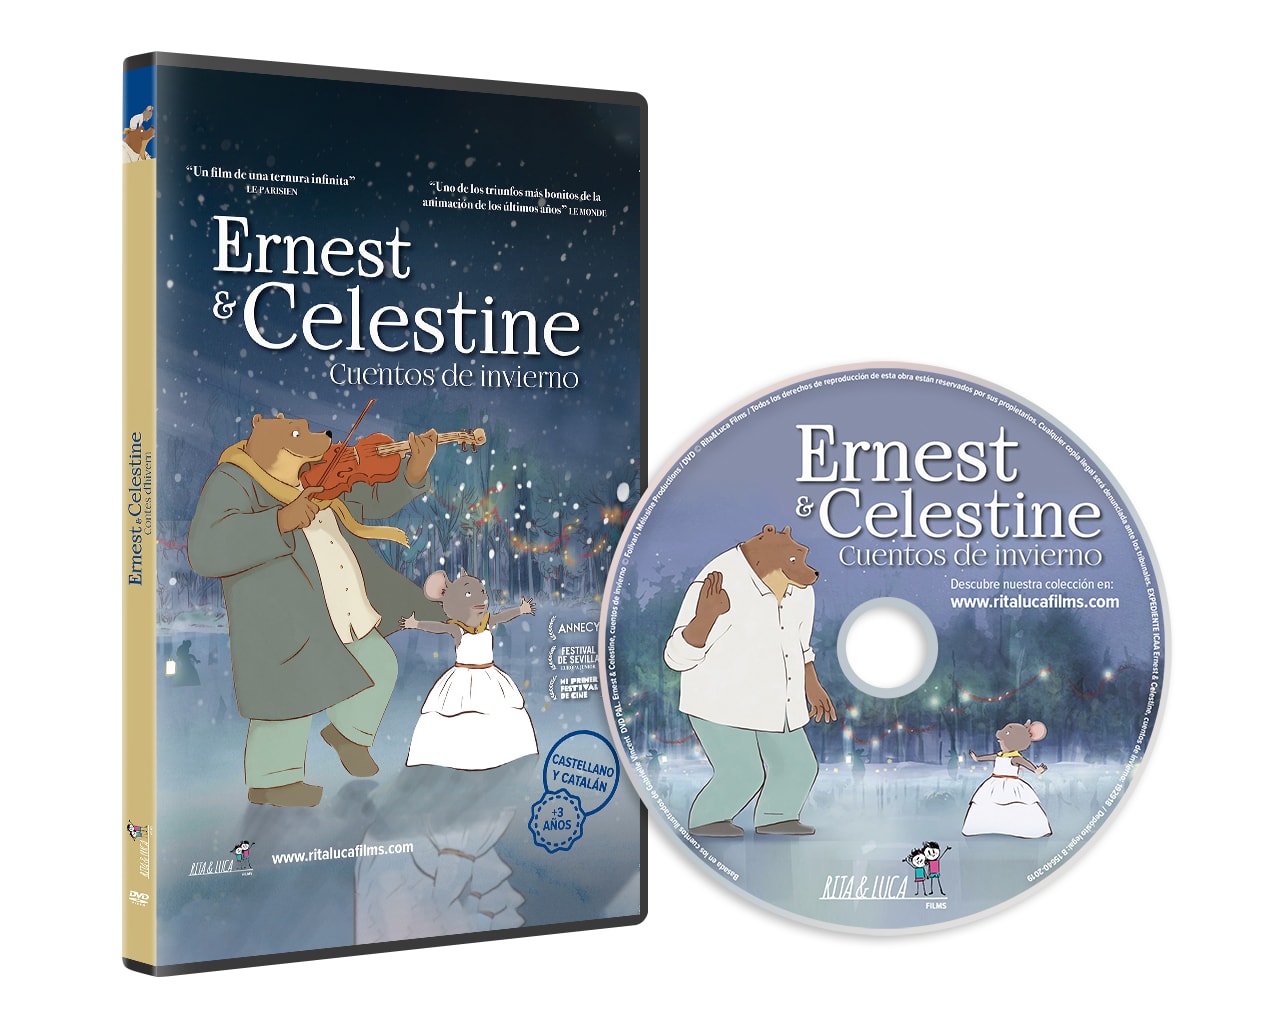 DVD ERNEST & CELESTINE - Rita & Luca Films